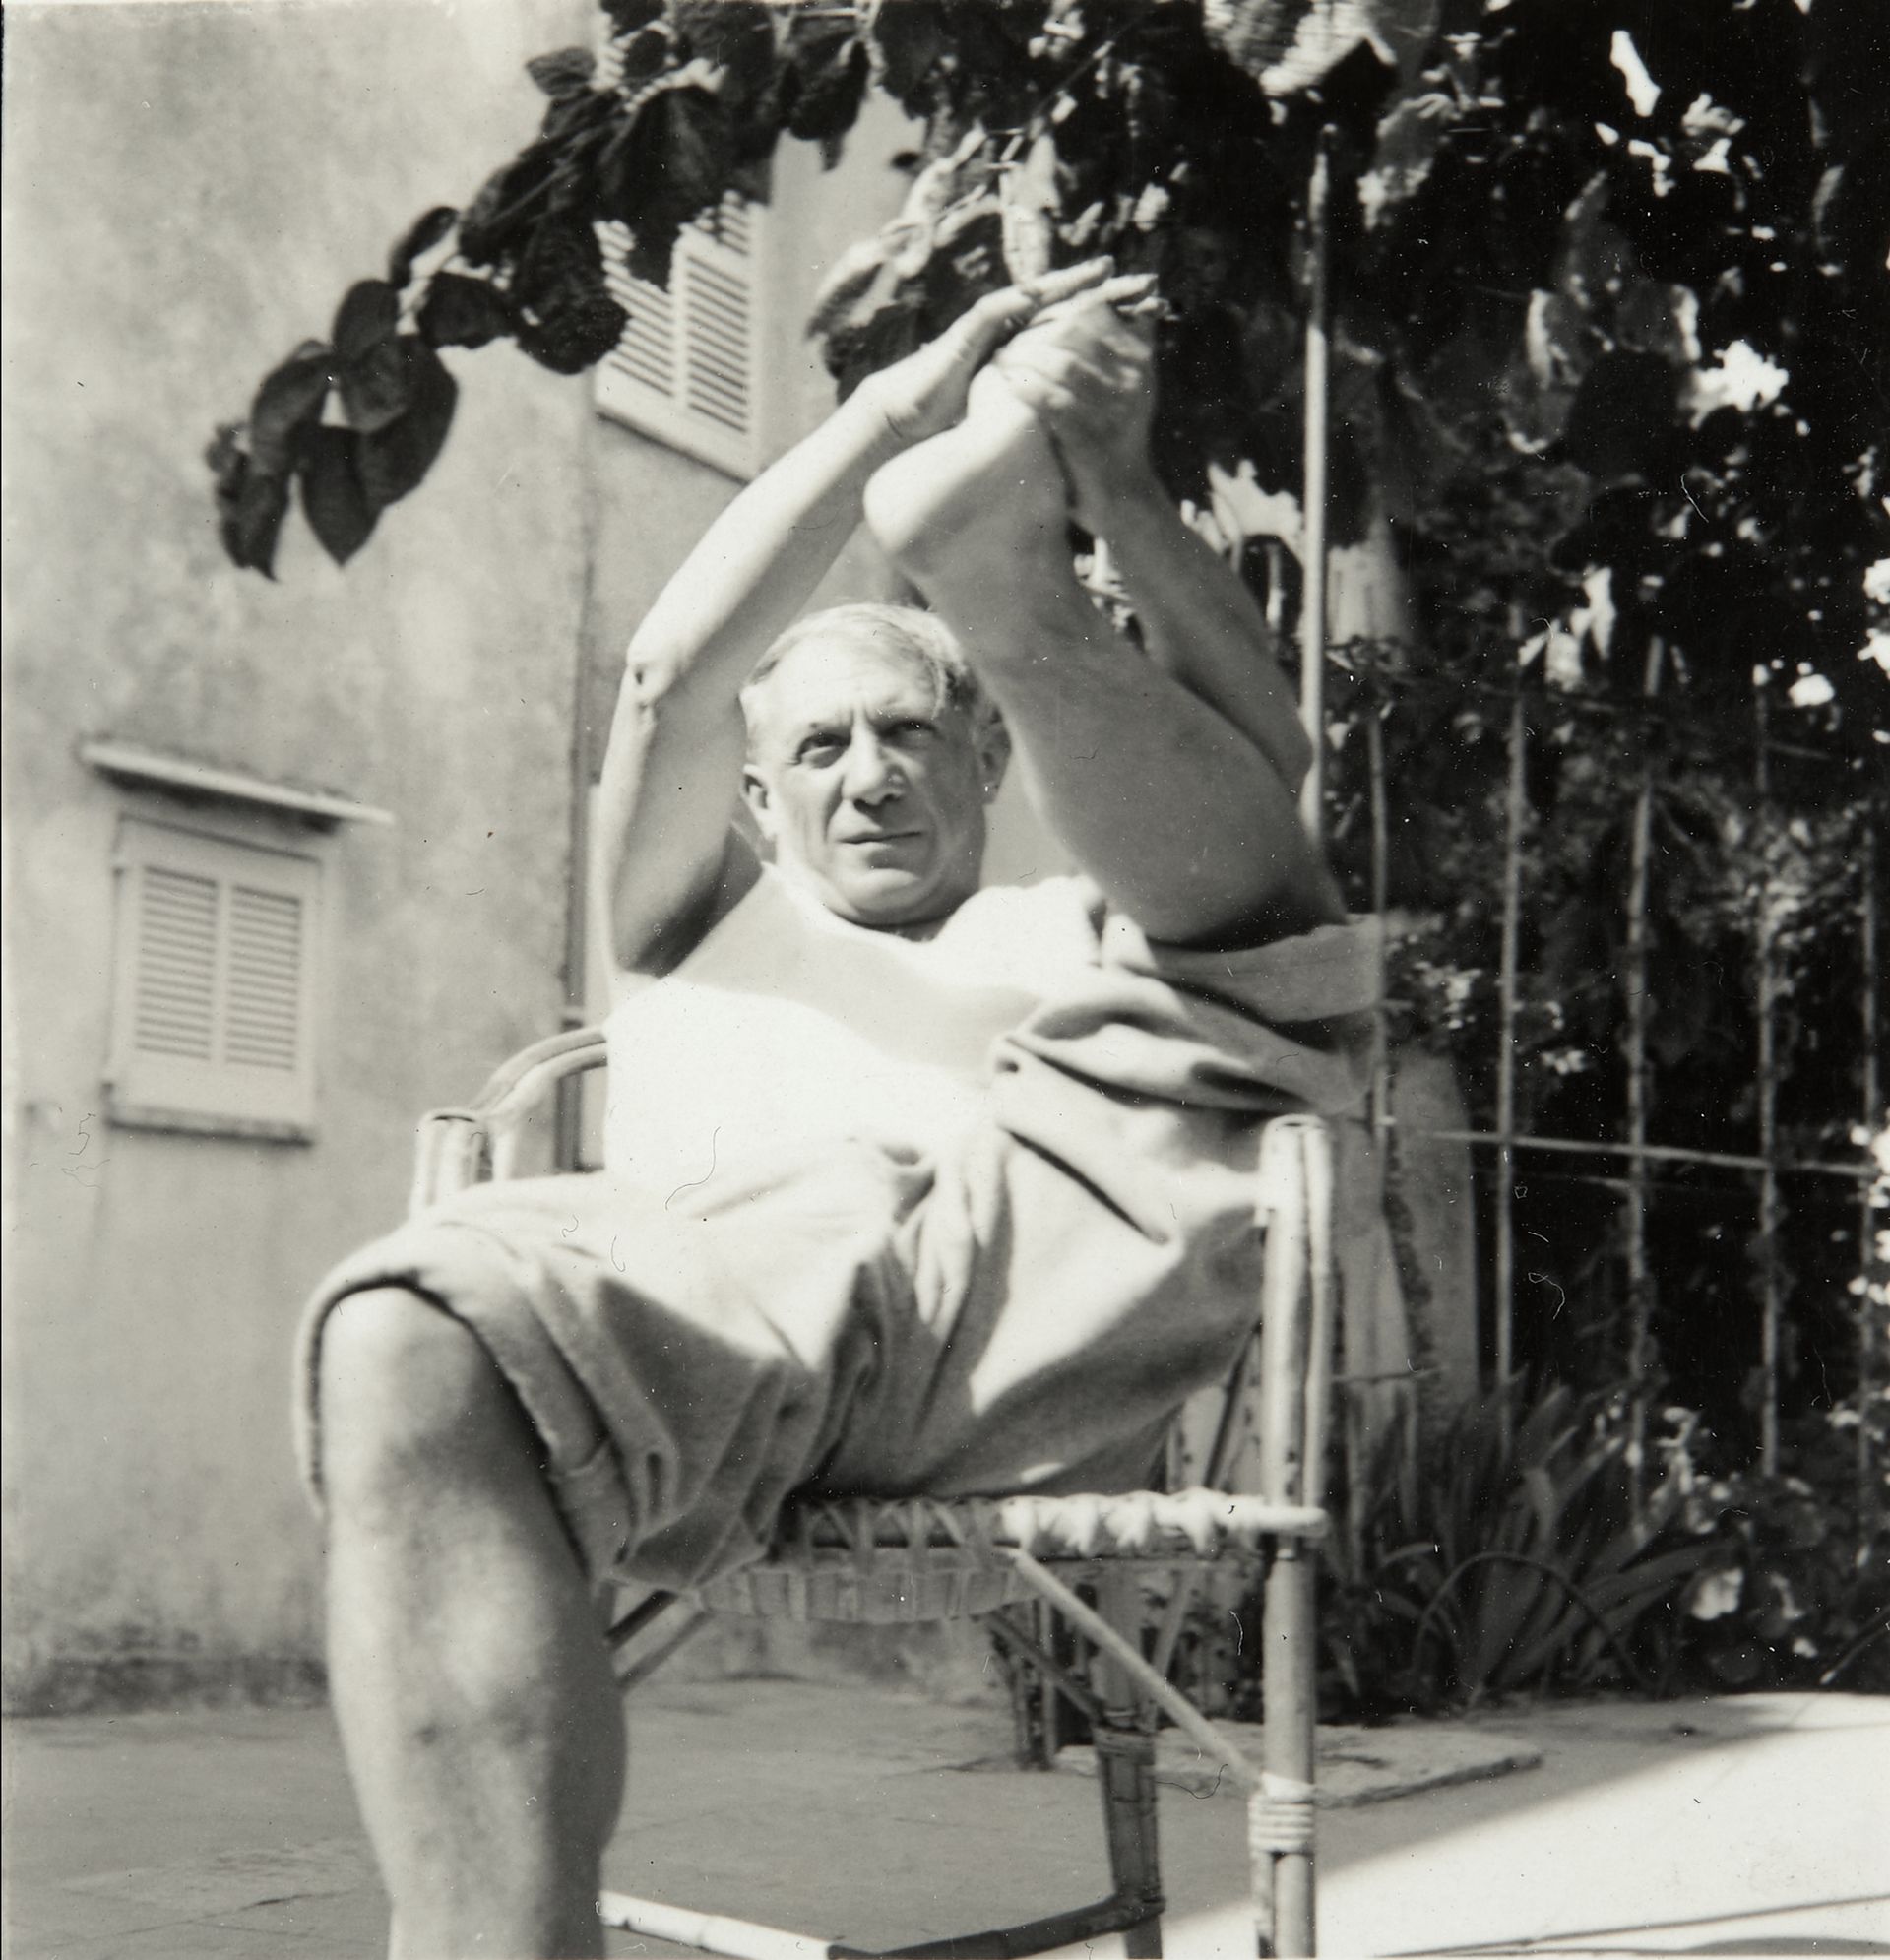 Pablo Picasso dans son fauteuil en rotin.